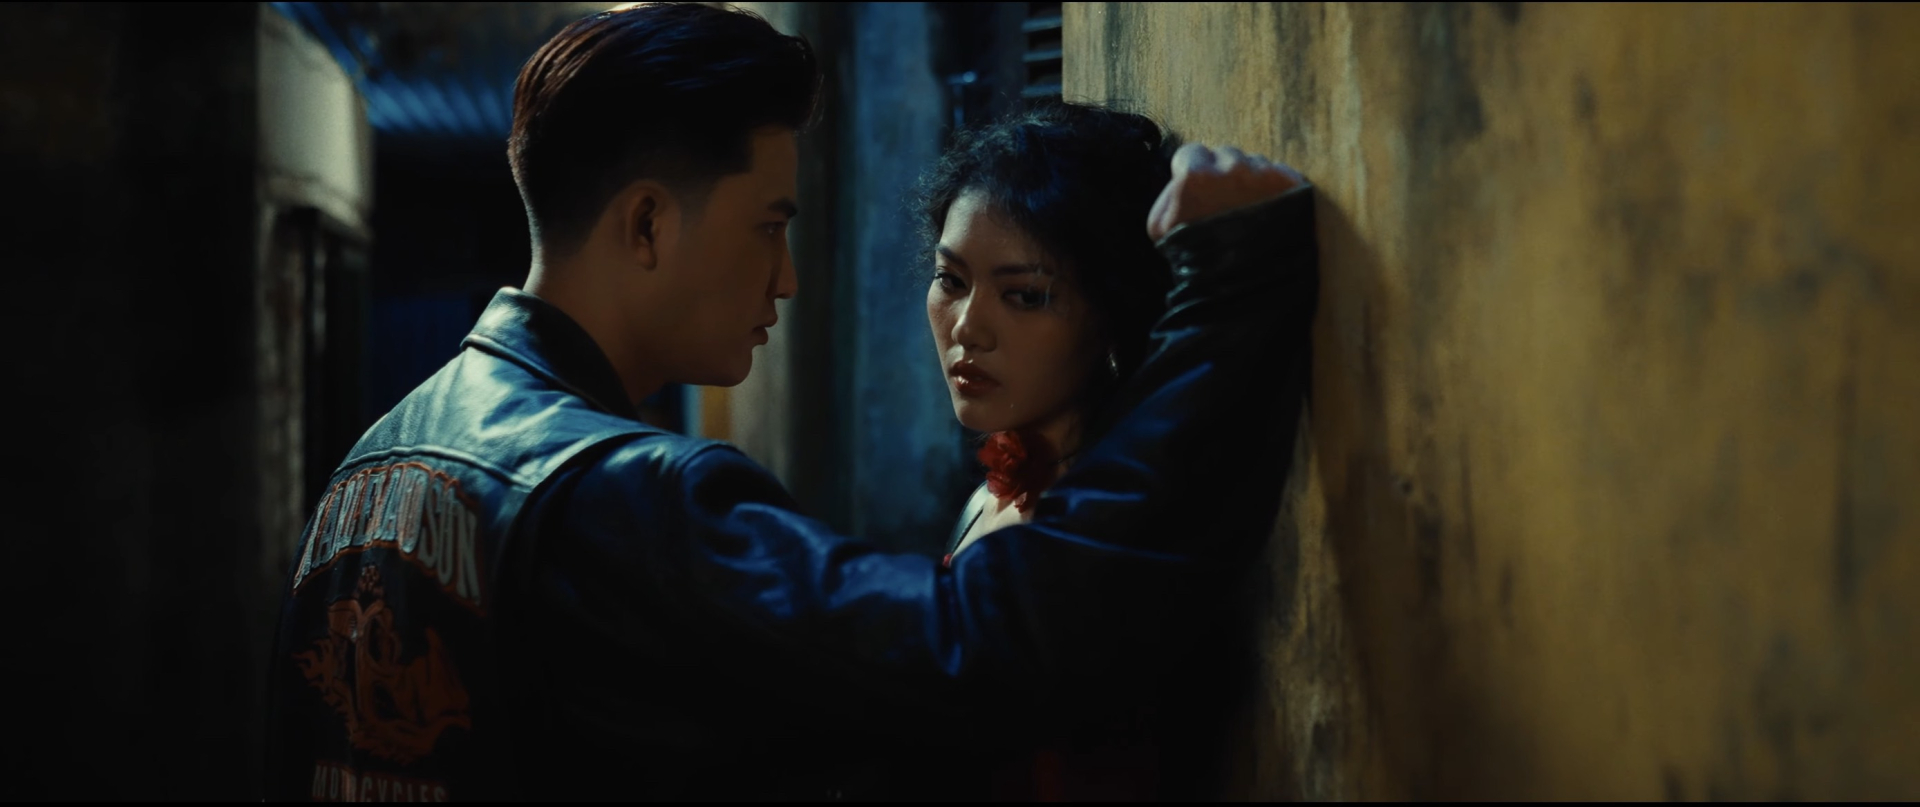 Vicky Nhung phát hành MV Ngược Lối Yêu dựa trên câu chuyện của khán giả  - ảnh 2